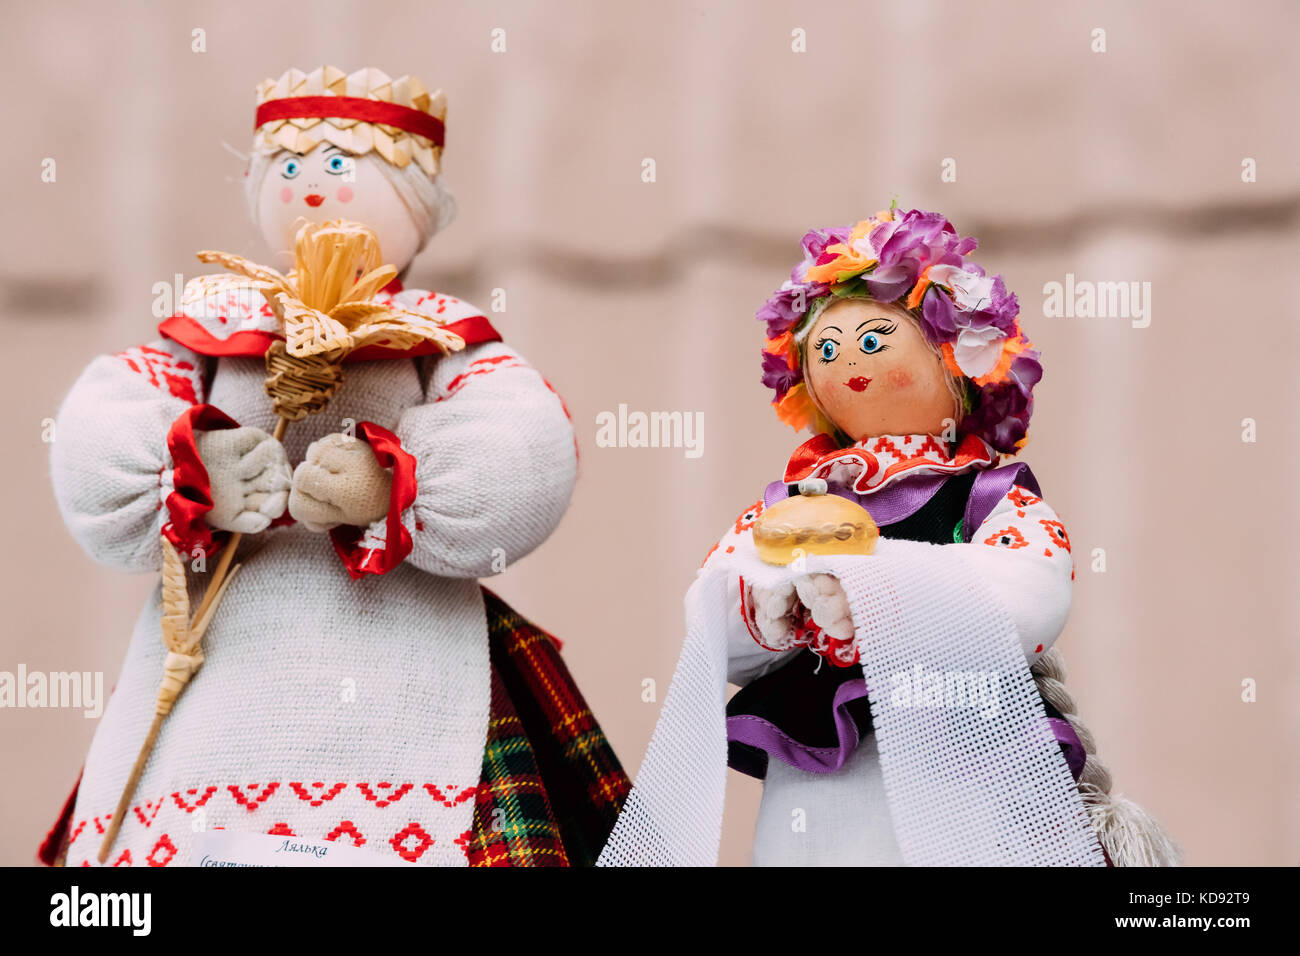 Bielorusso bambola folk. nazionale di musica folk tradizionale bambole sono popolari souvenir dalla Bielorussia. Foto Stock